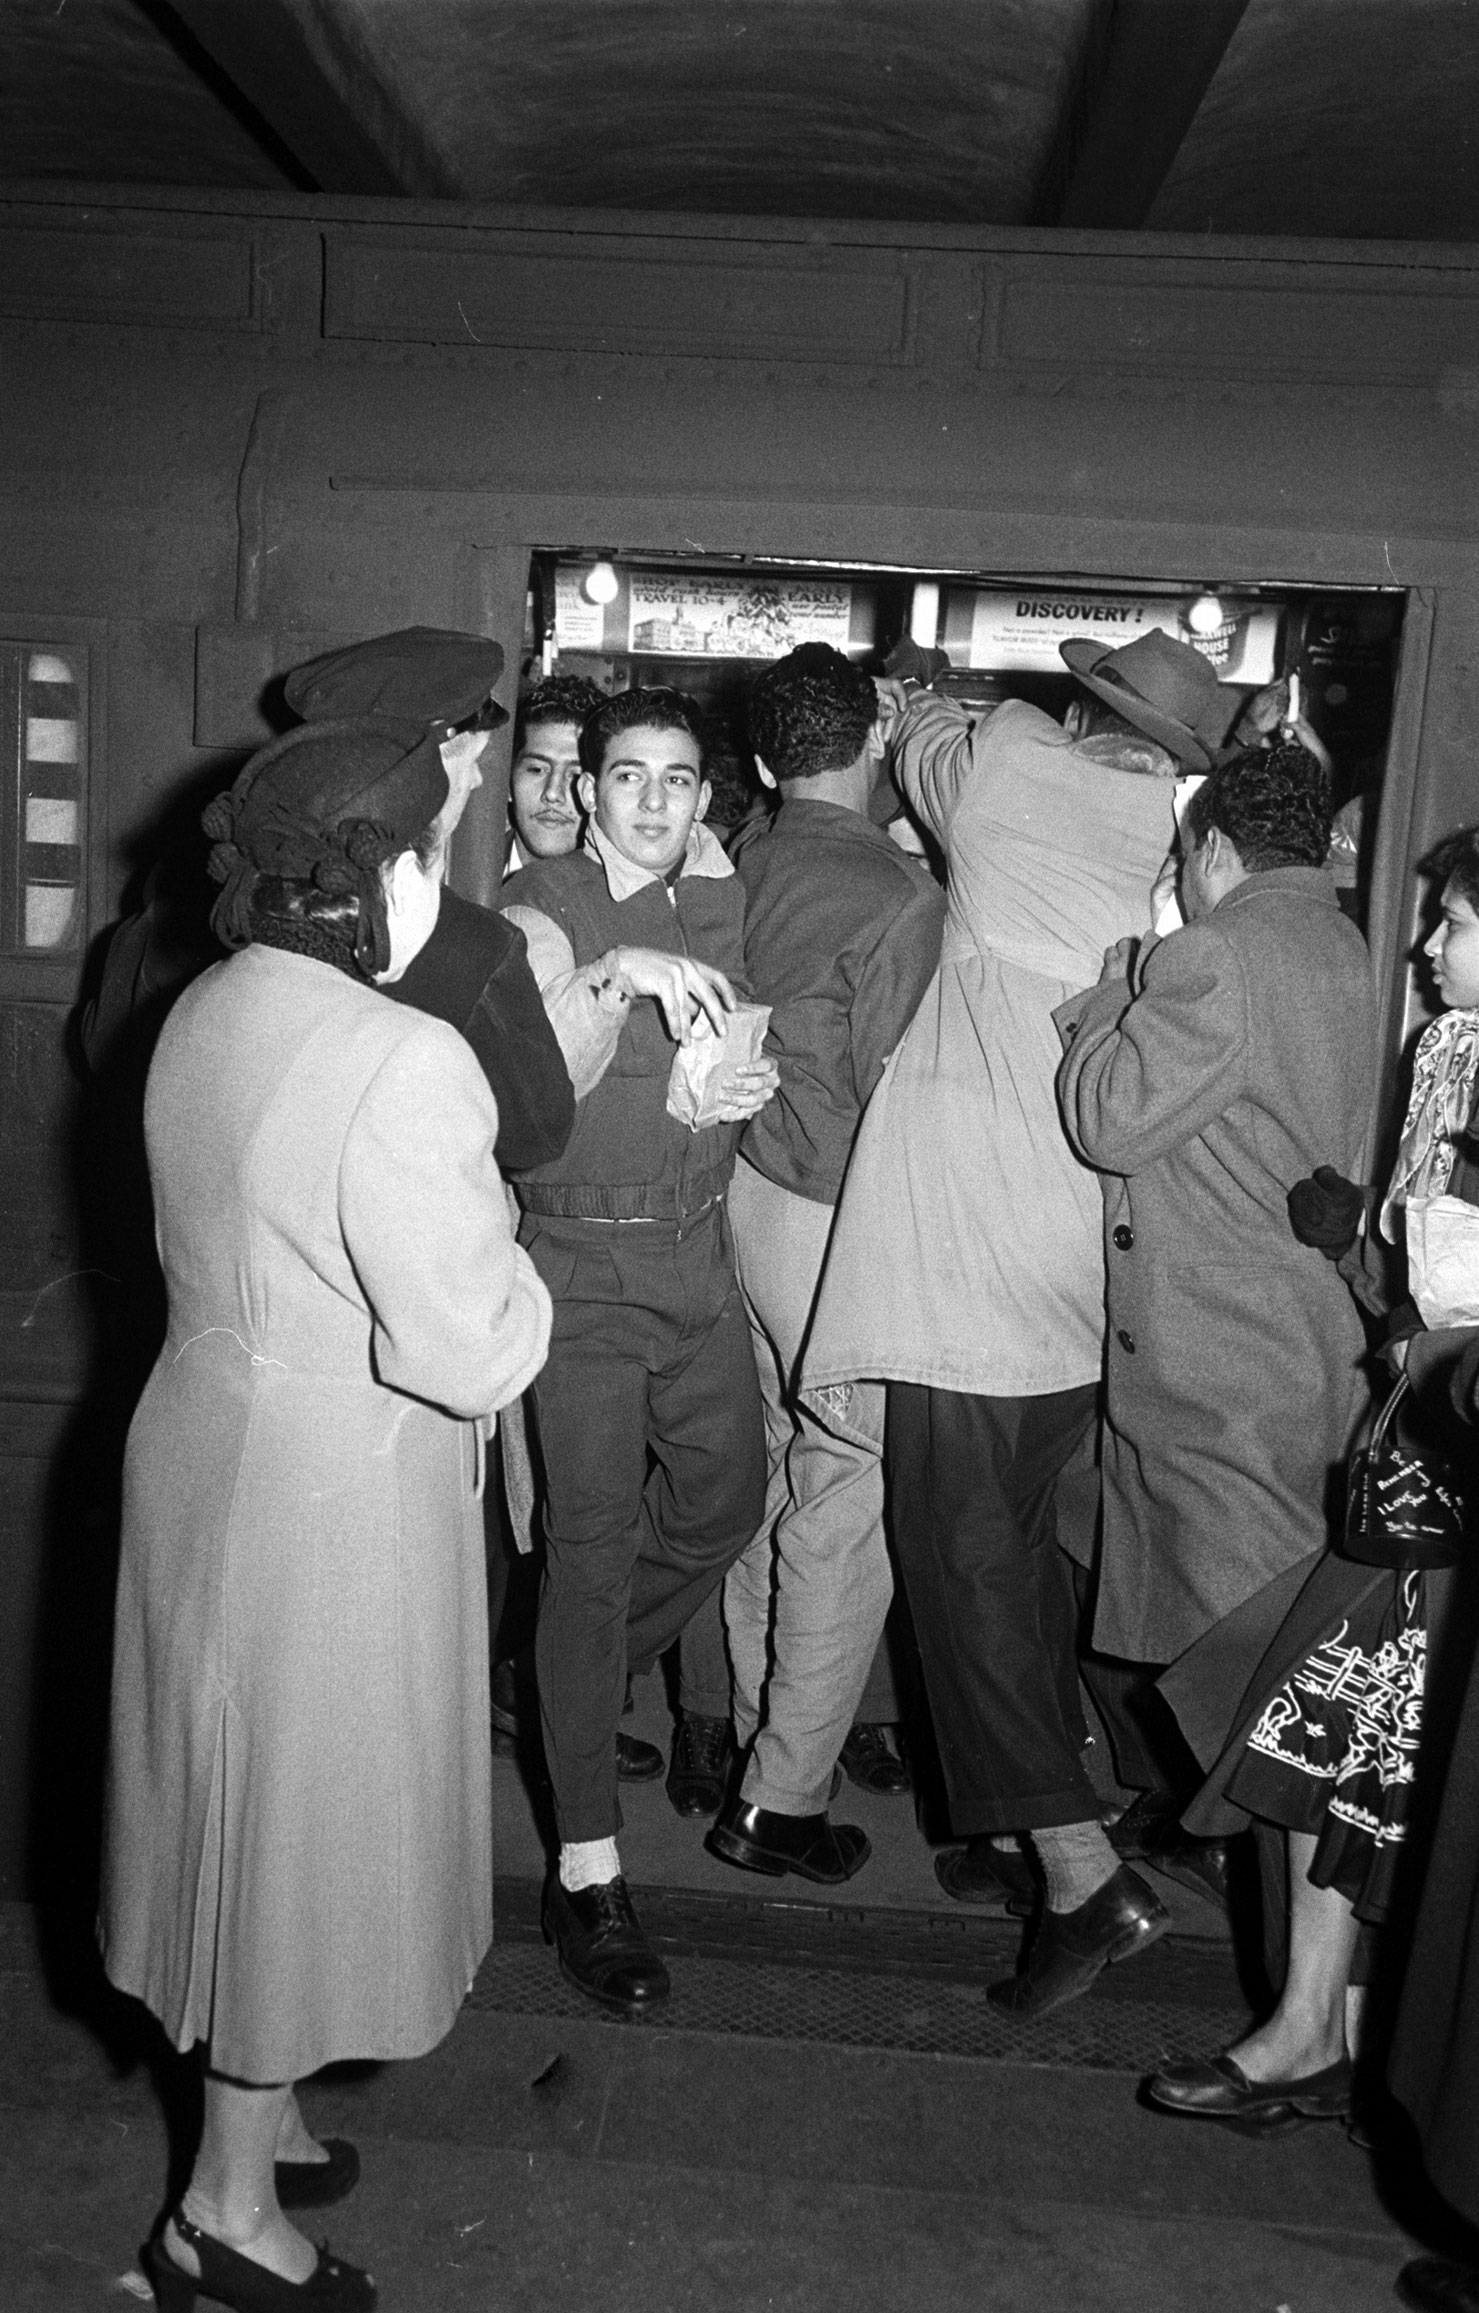 New York City subway, 1953.